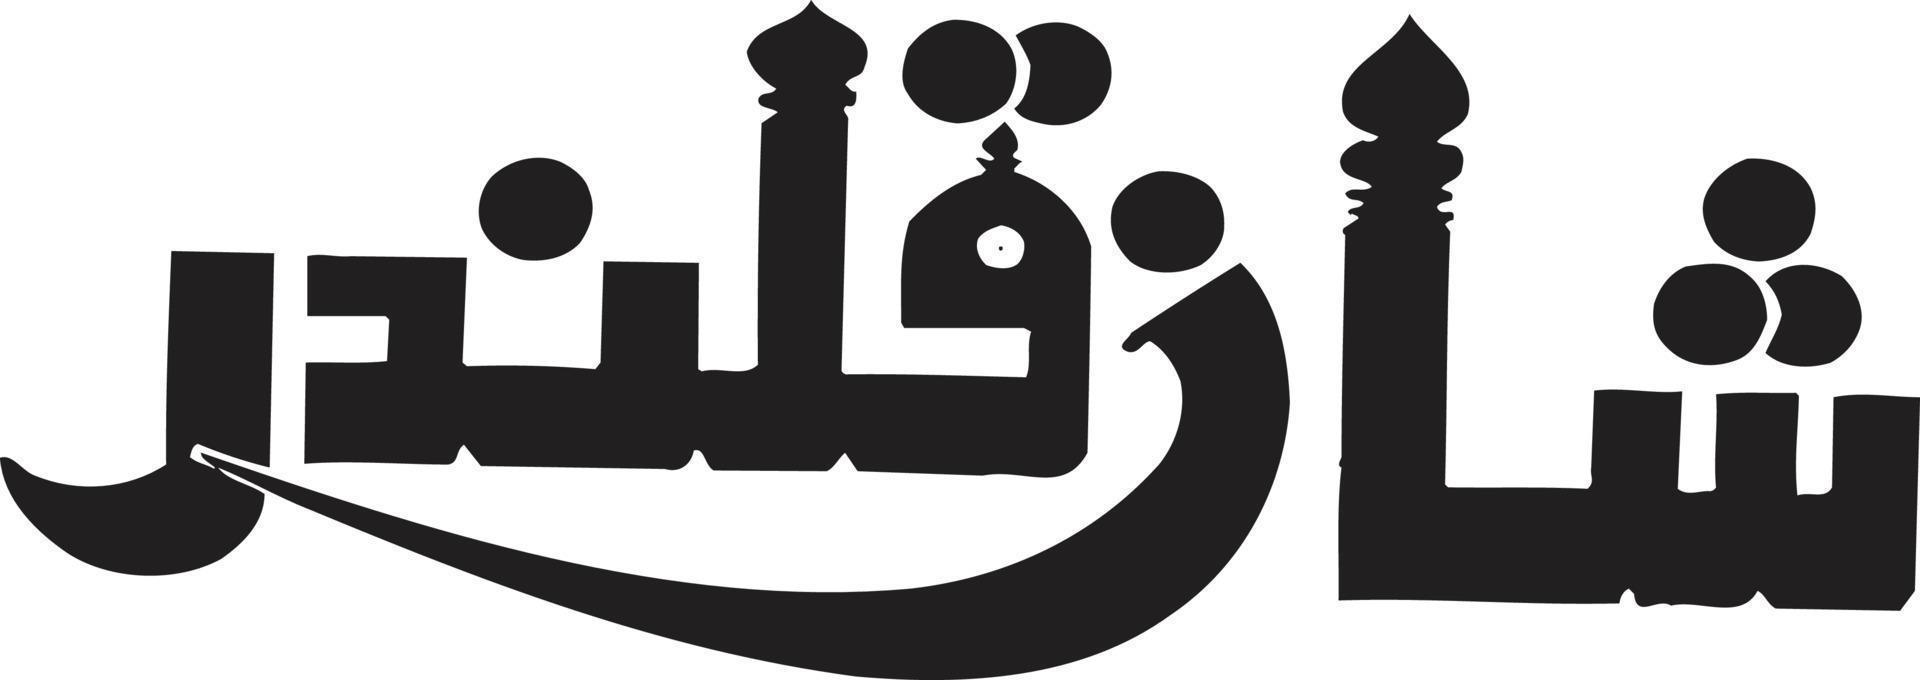 sahan qulander caligrafía árabe islámica vector libre